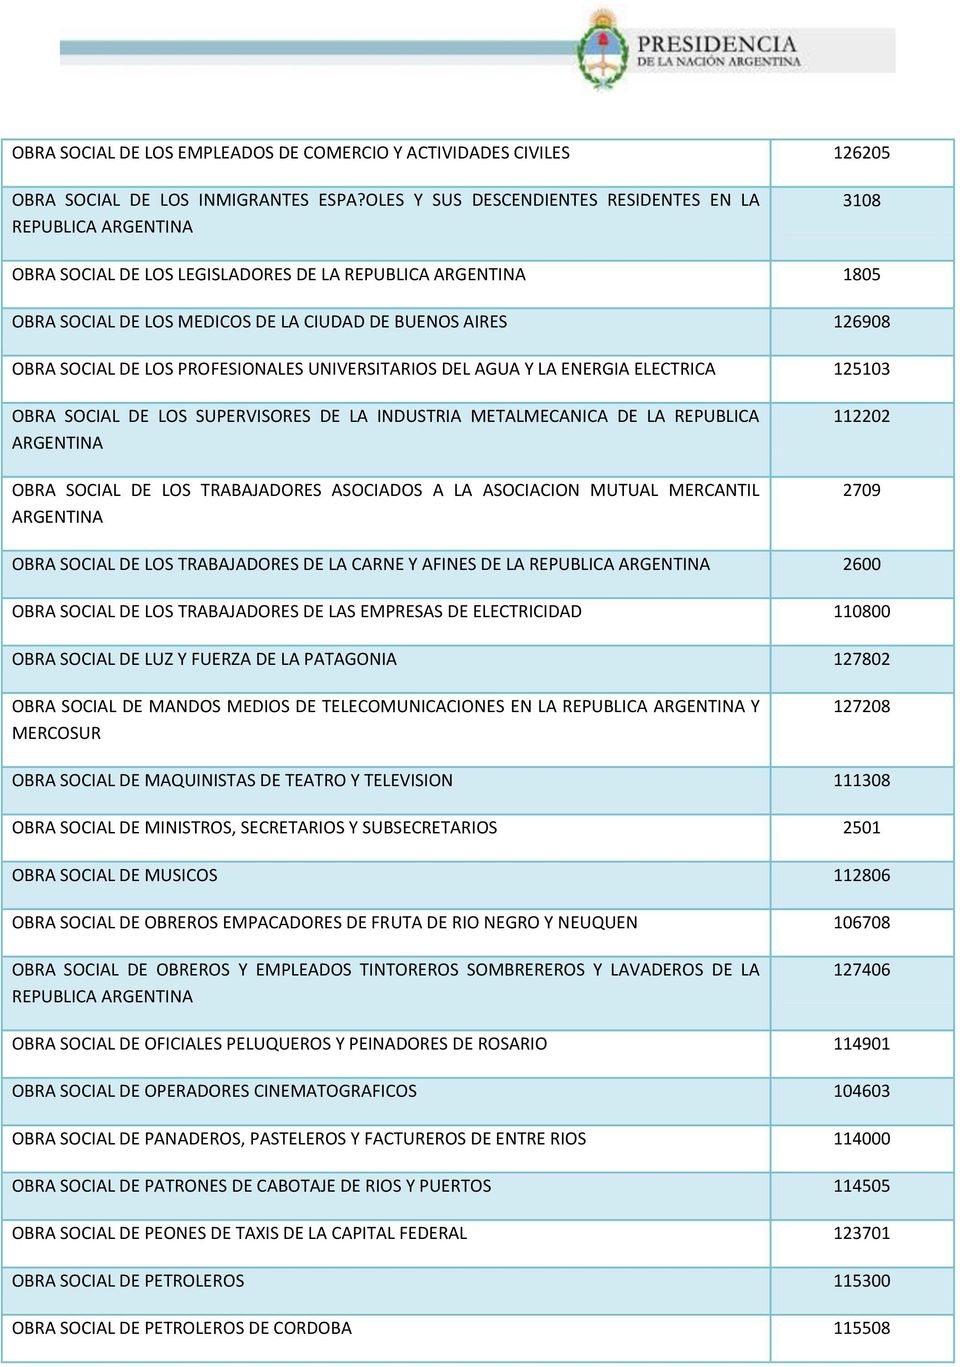 SOCIAL DE LOS PROFESIONALES UNIVERSITARIOS DEL AGUA Y LA ENERGIA ELECTRICA 125103 OBRA SOCIAL DE LOS SUPERVISORES DE LA INDUSTRIA METALMECANICA DE LA REPUBLICA ARGENTINA OBRA SOCIAL DE LOS